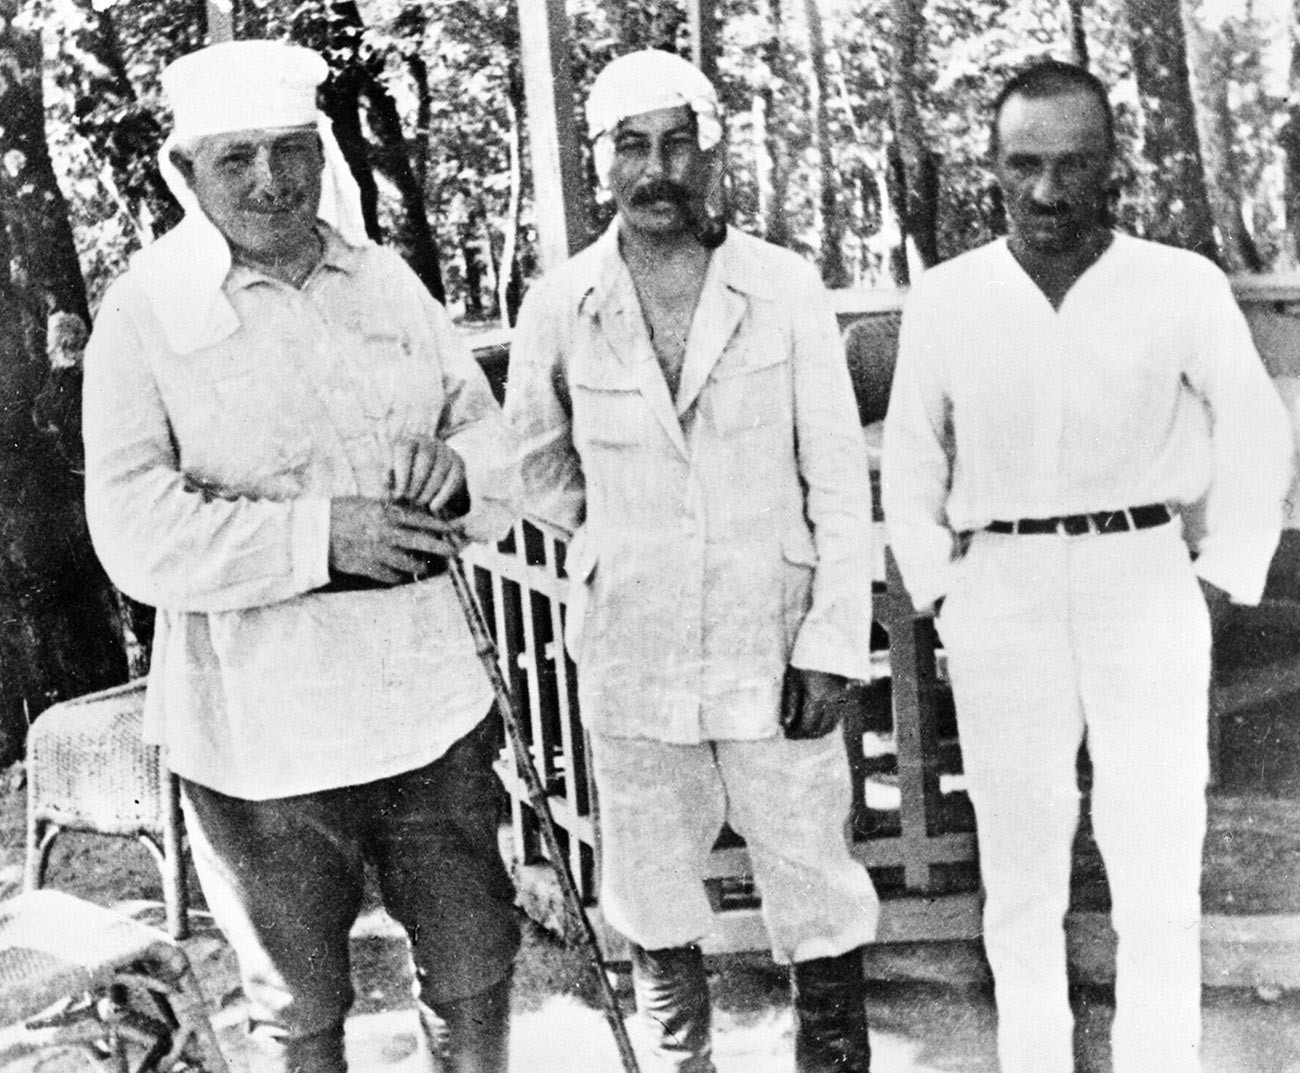 Јосиф Стаљин (у средини) и Анастас Микојан (десно) за време одмора.